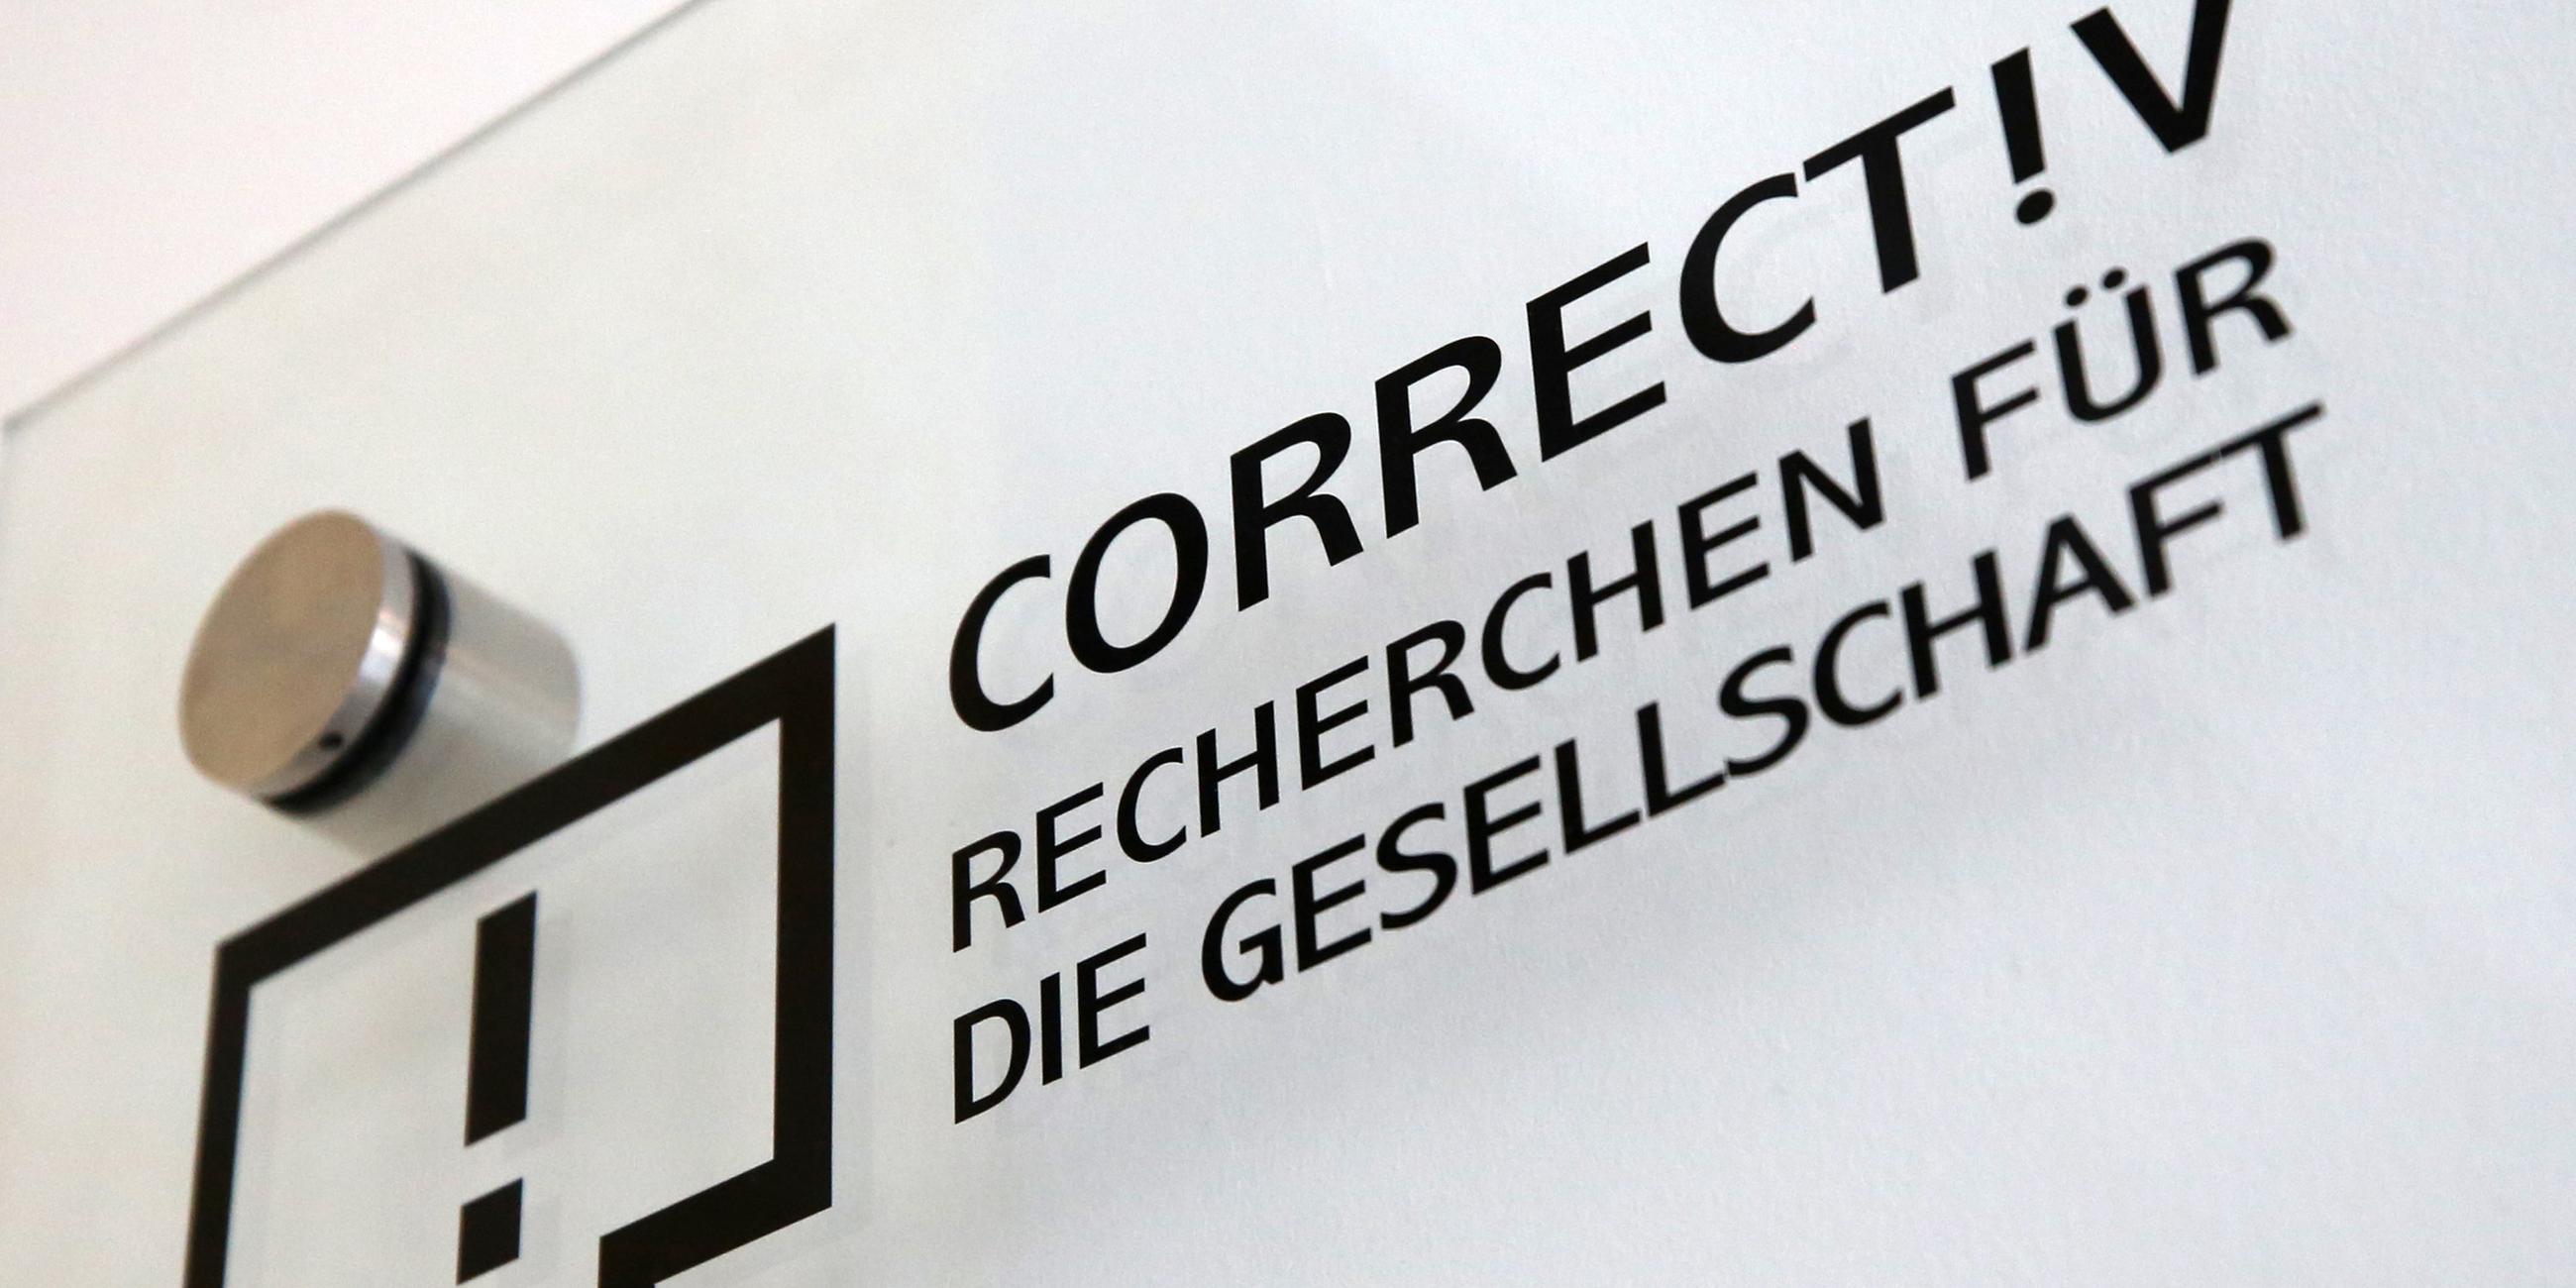 Das Firmenschild des stiftungsfinanzierten Recherchebüros "Correctiv" hängt am 16.01.2017 an einer Hauswand in Essen (Nordrhein-Westfalen). 